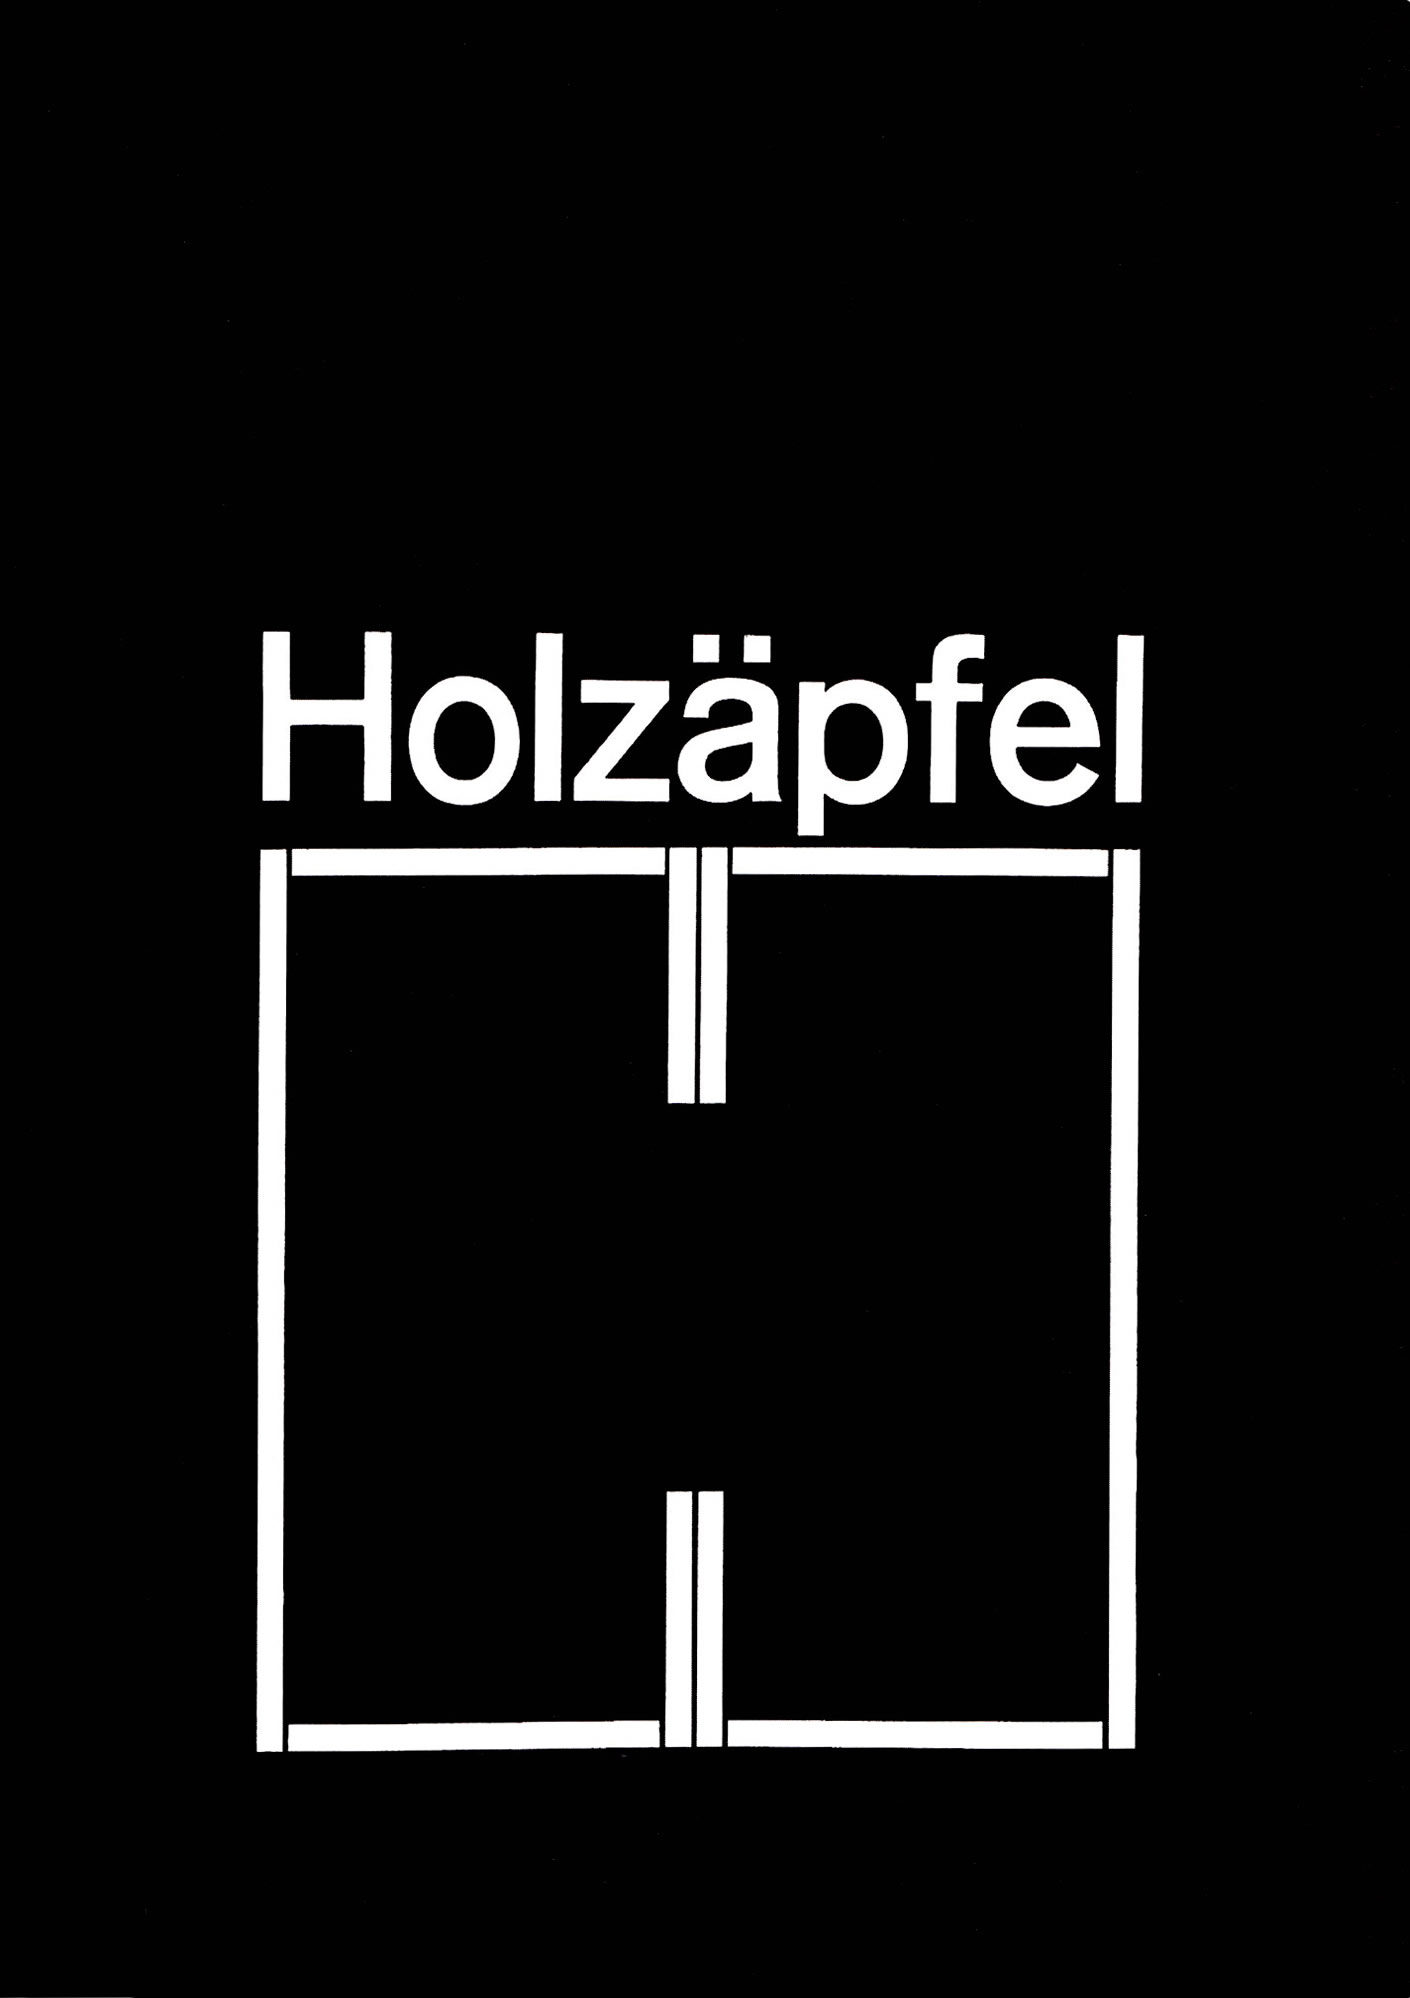 Holzäpfel. Logo. Designer: Karl Gerstner